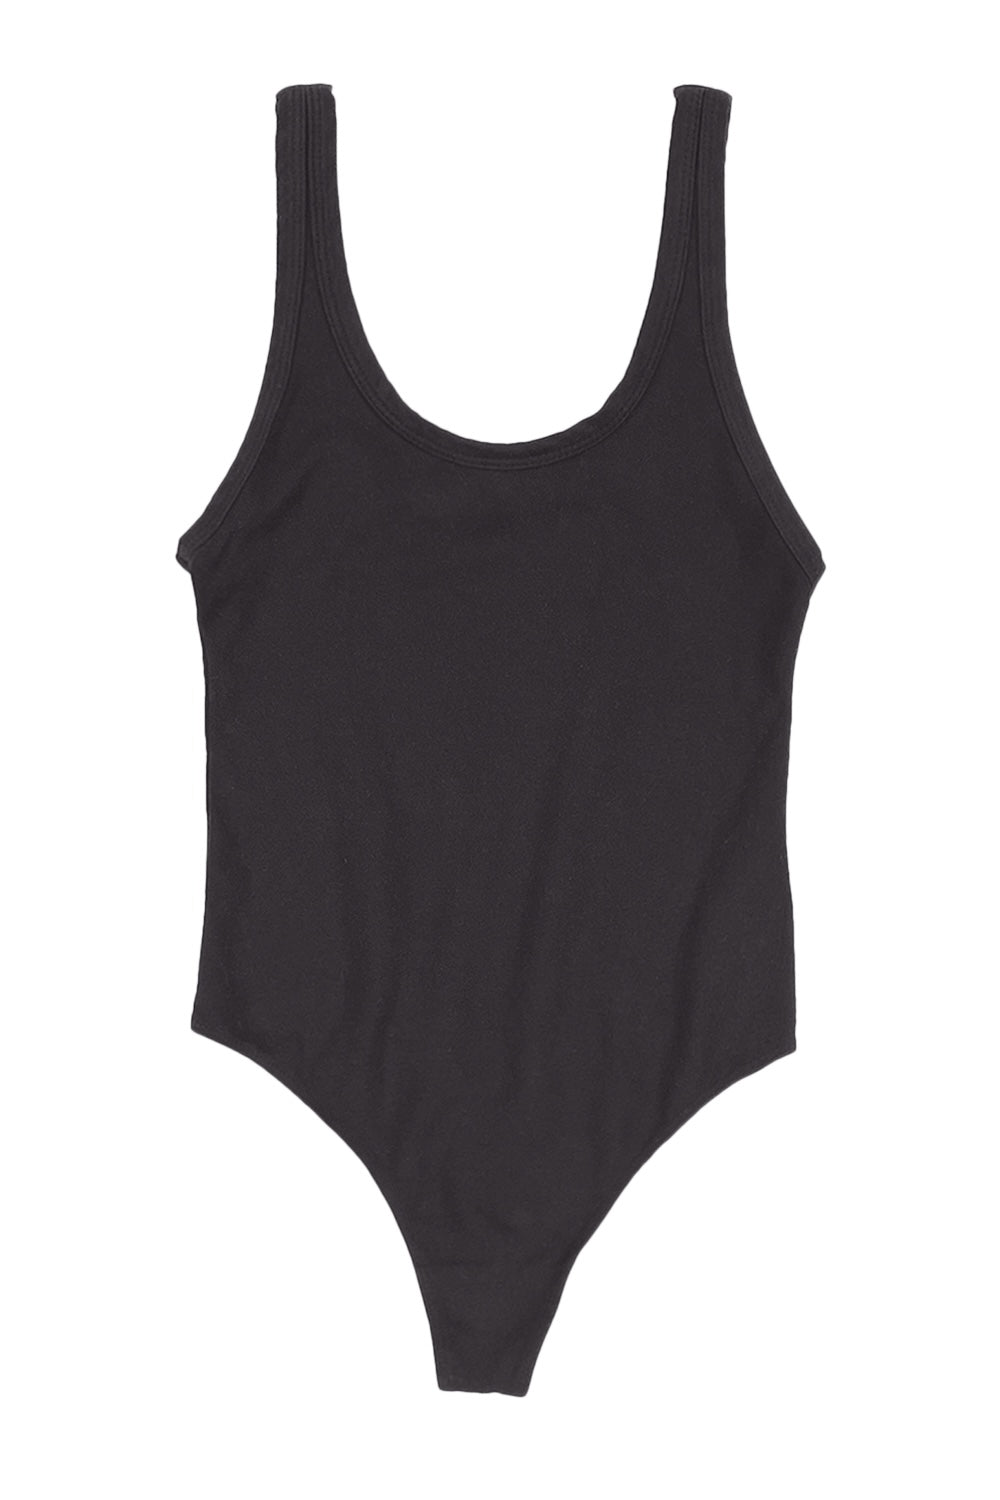 Bodysuit | Jungmaven Hemp Clothing & Accessories / Color: Black